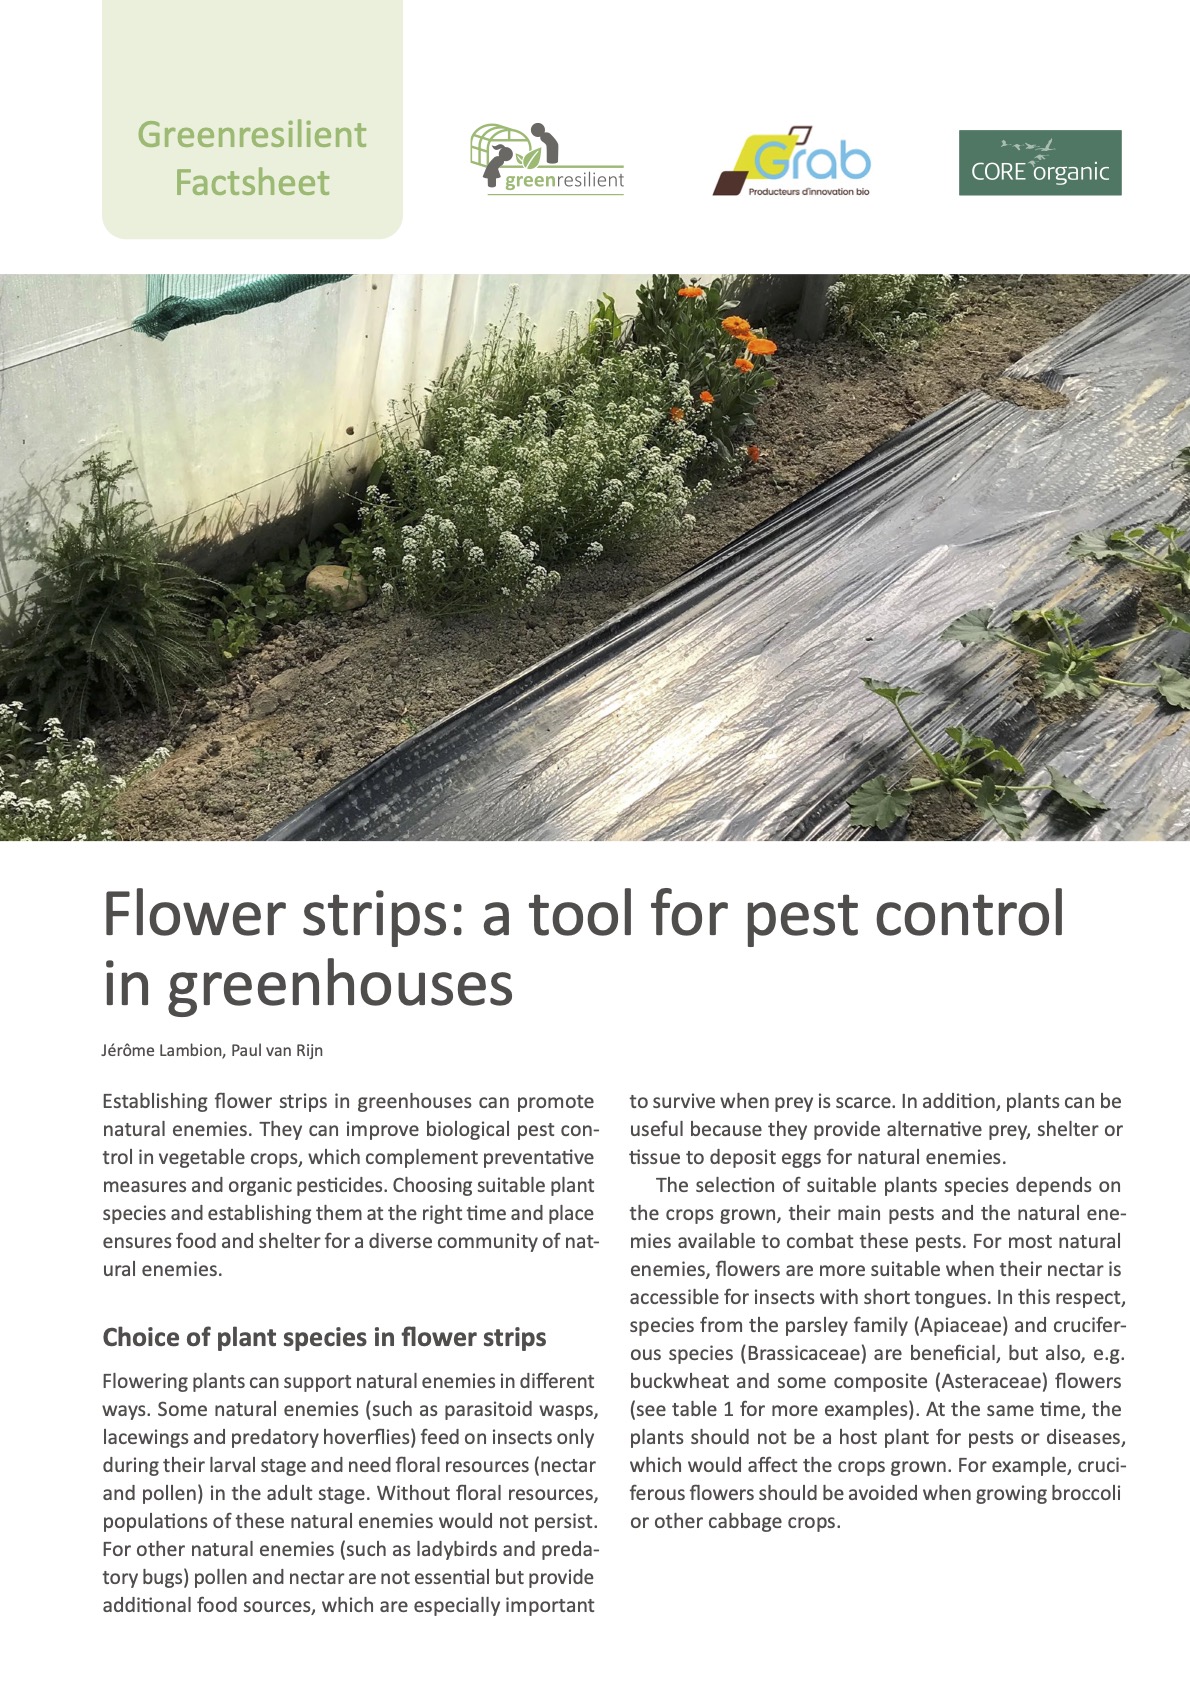 Λωρίδες λουλουδιών: ένα εργαλείο για τον έλεγχο των παρασίτων σε θερμοκήπια (Greenresilient Factsheet)